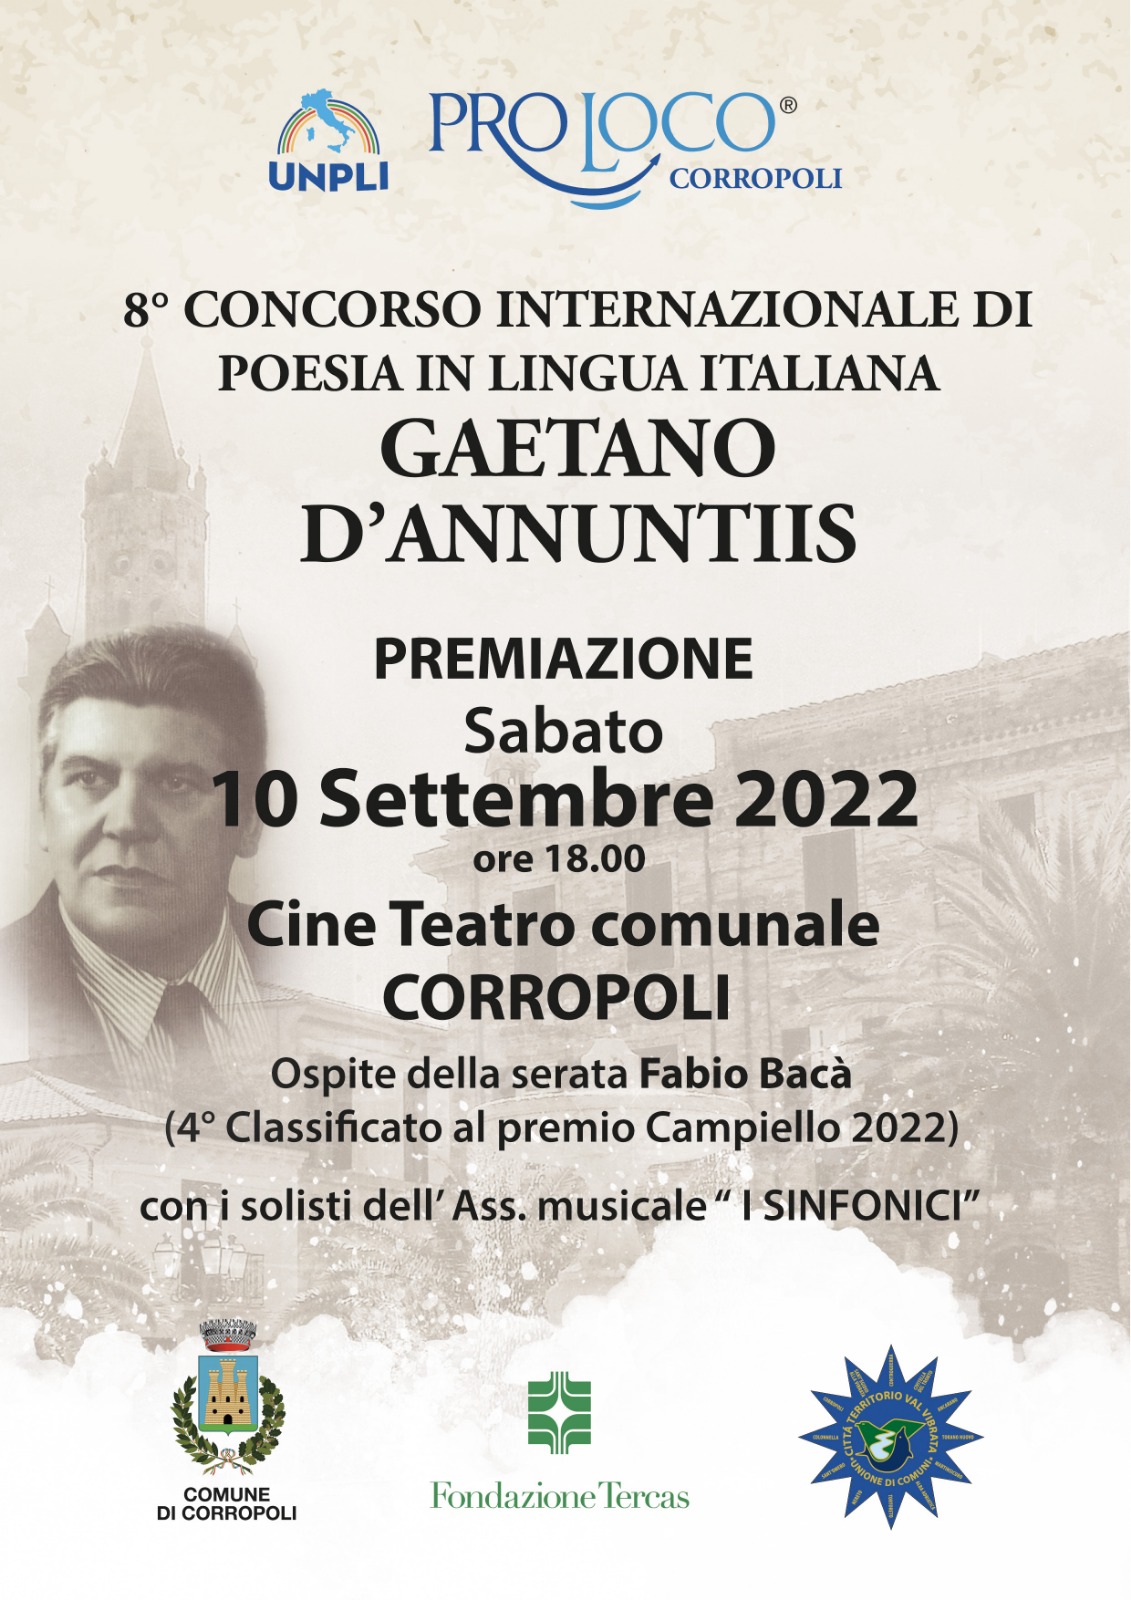 Premiazione 8° Concorso internazionale di poesia in lingua italiana 